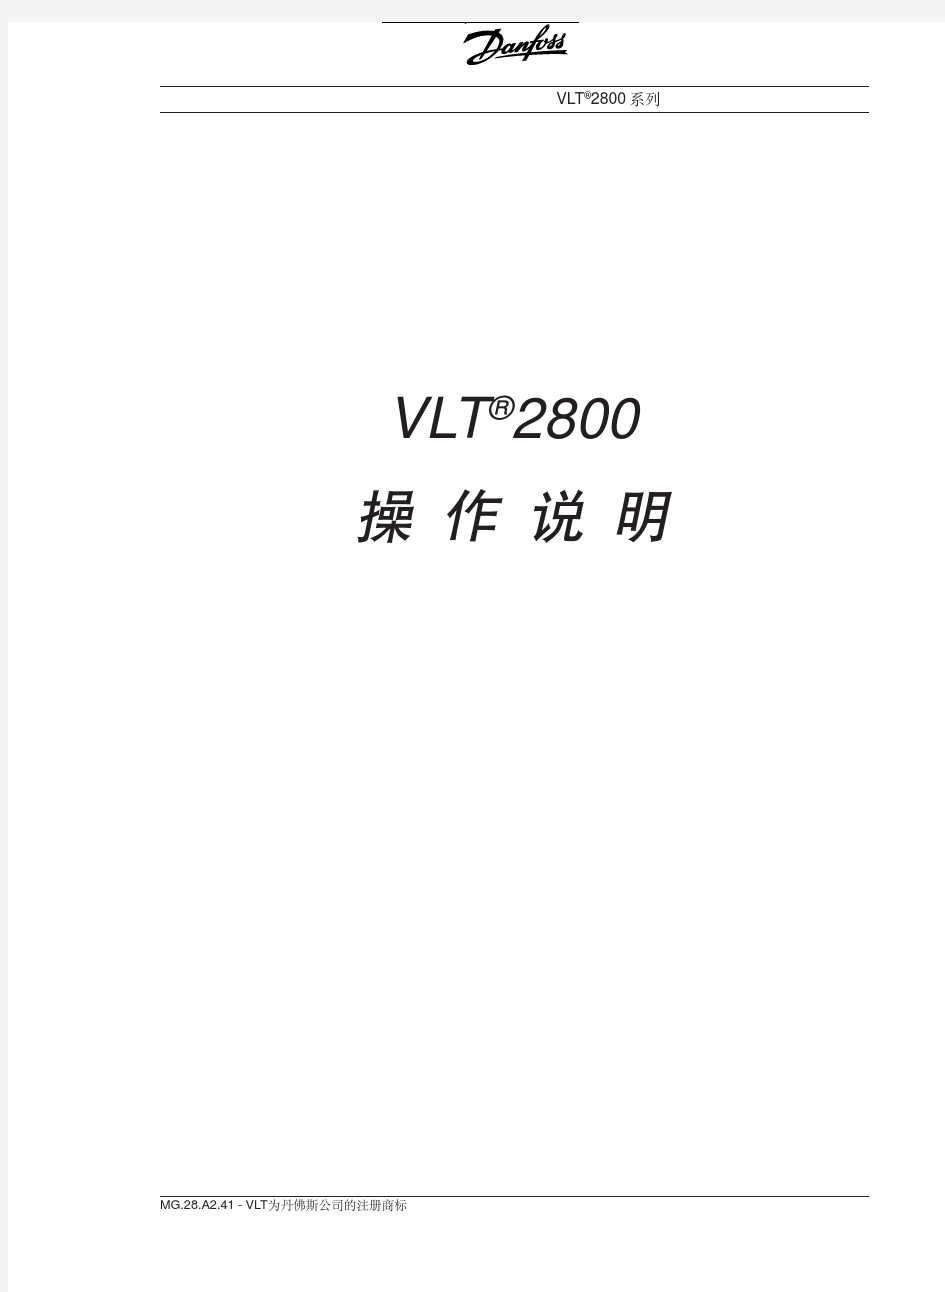 丹佛斯VLT2800变频器操作说明